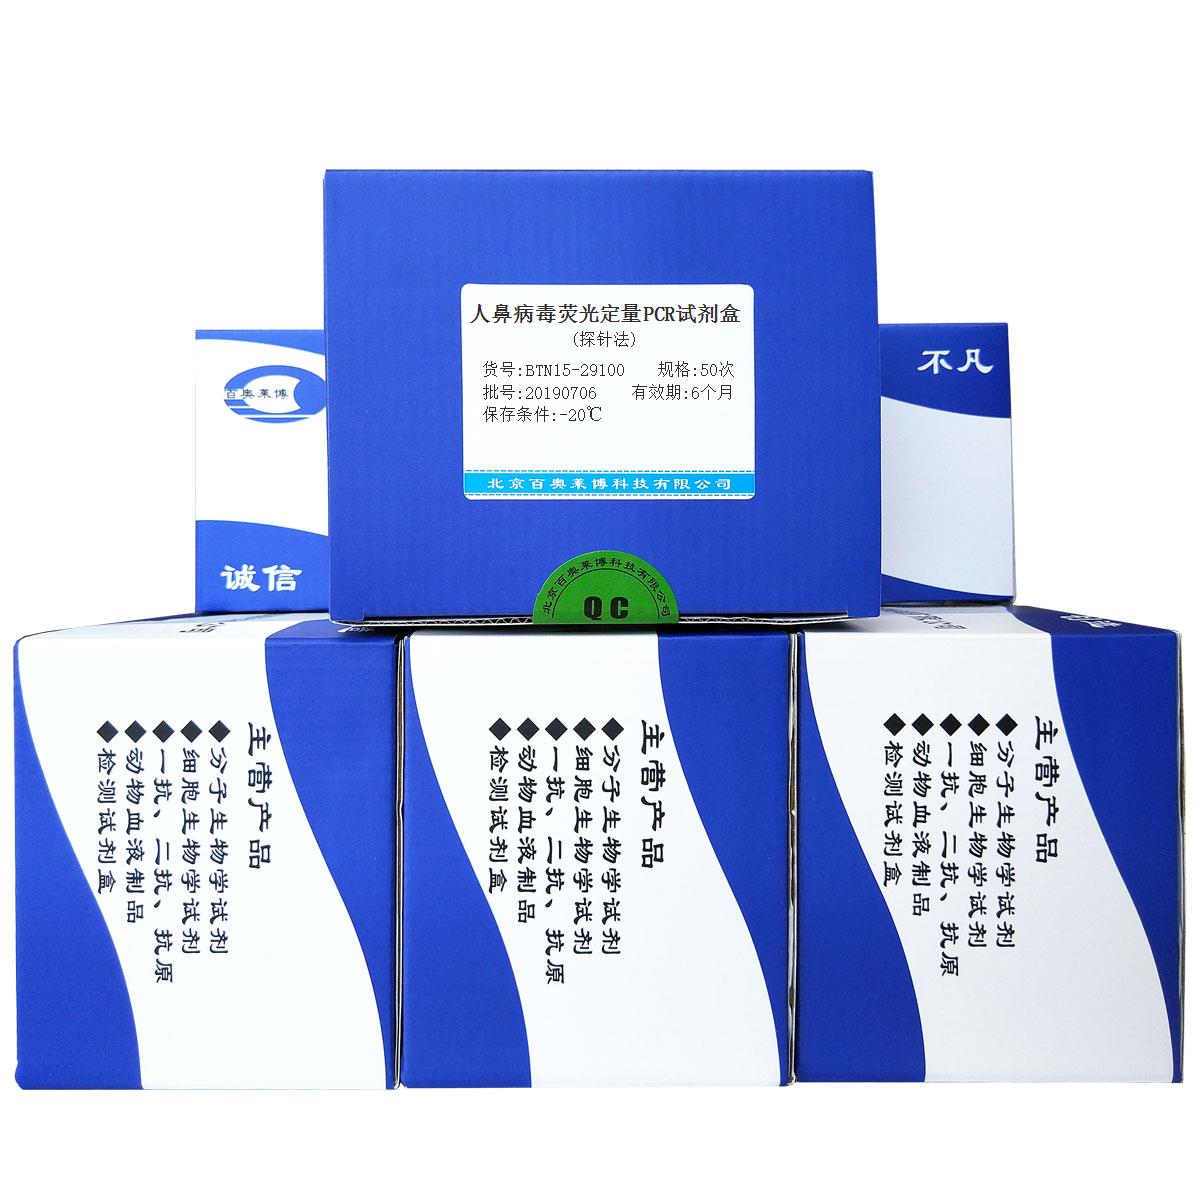 人鼻病毒荧光定量PCR试剂盒(探针法)北京厂家